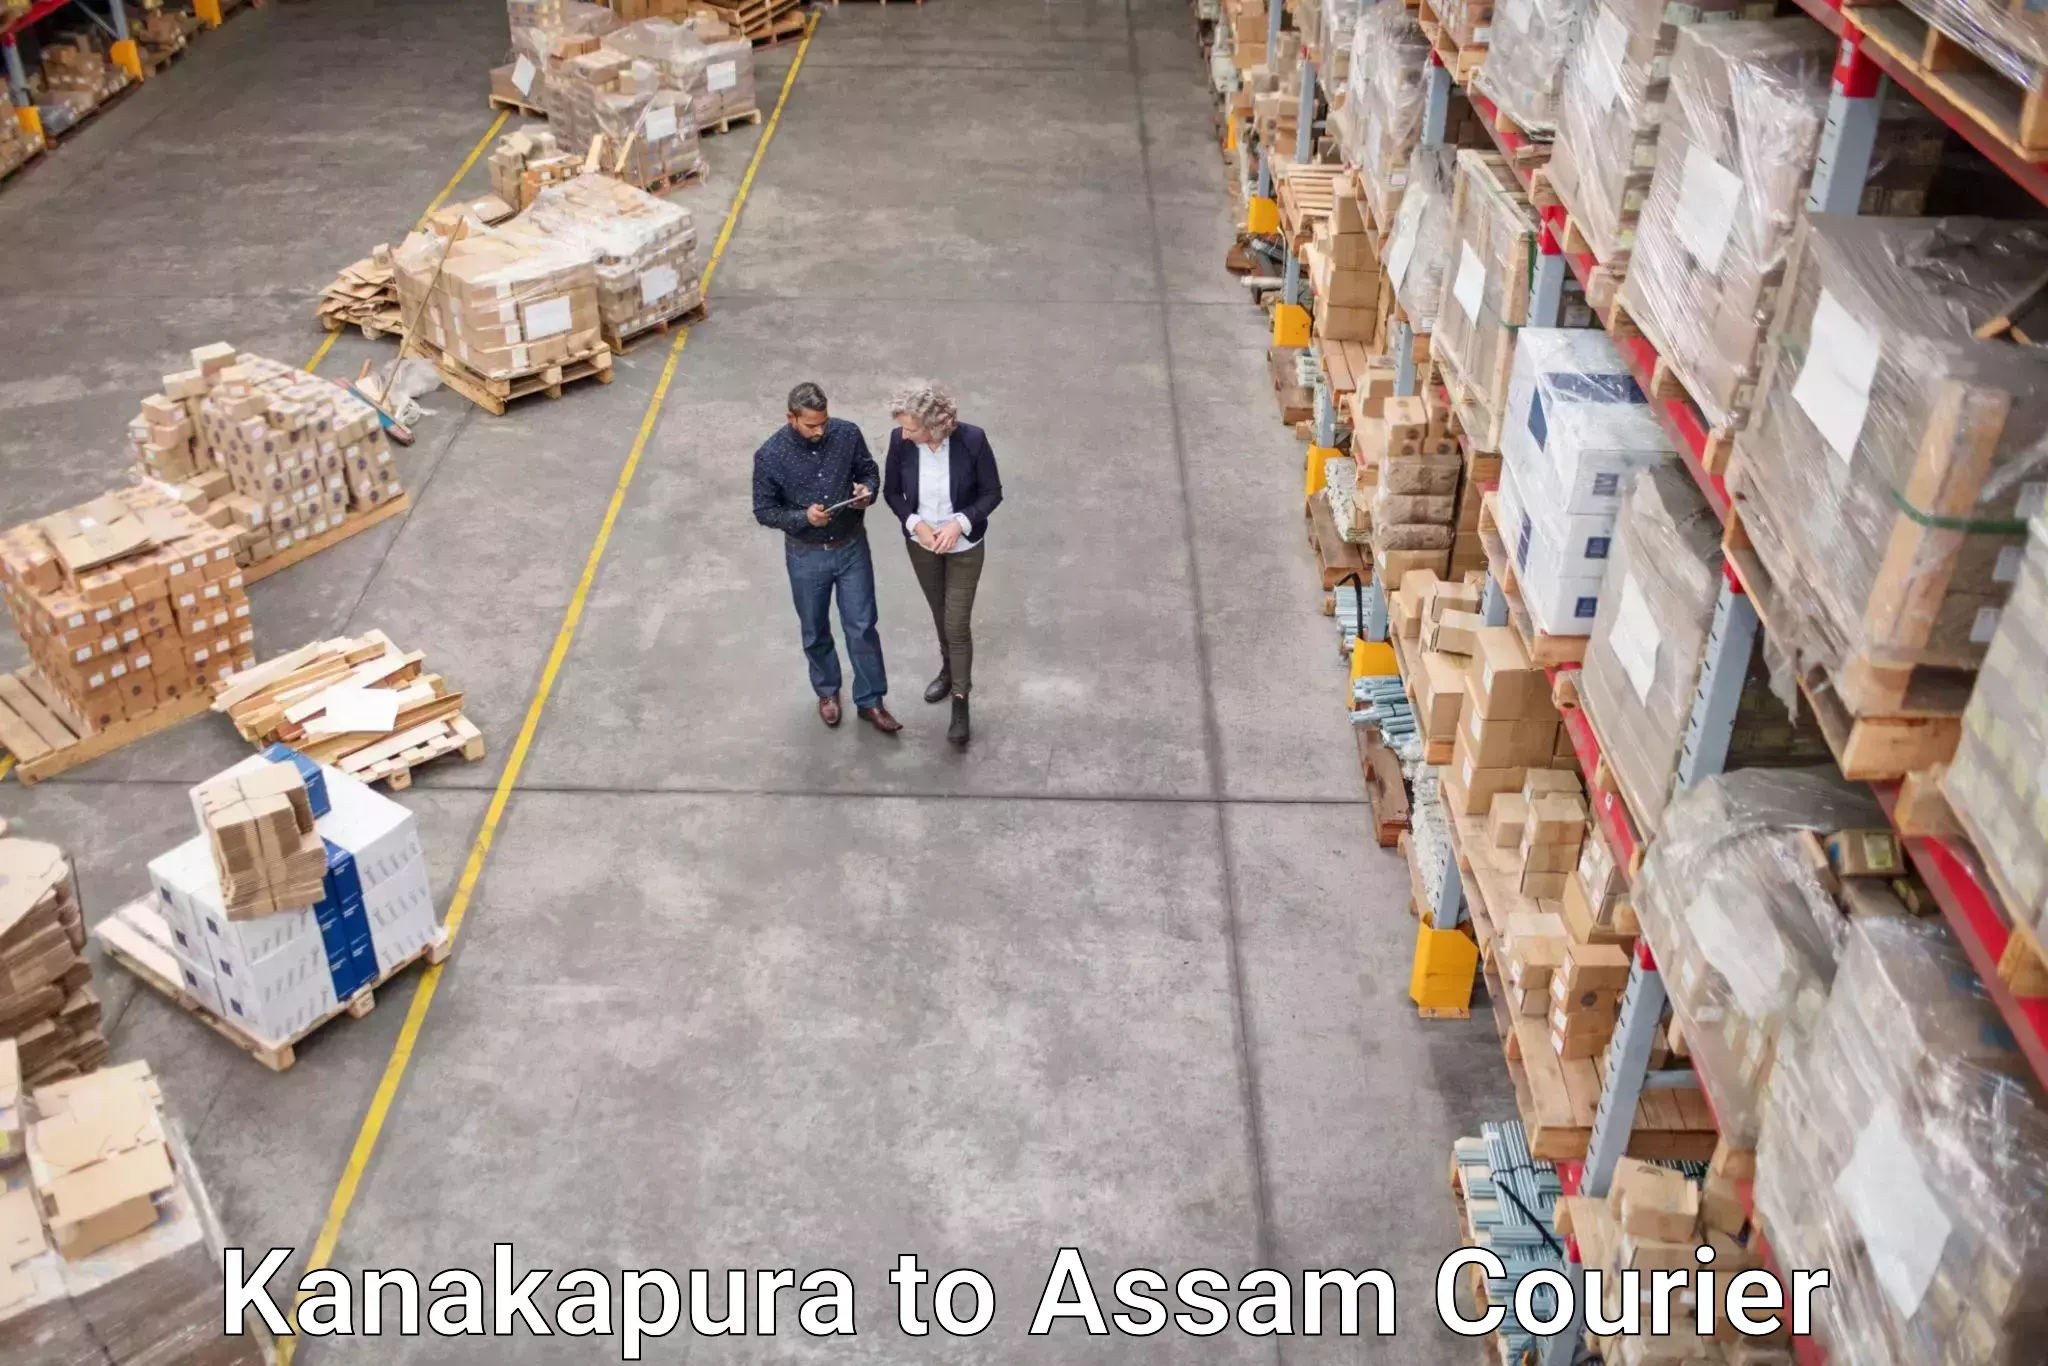 Courier service innovation Kanakapura to Bilasipara